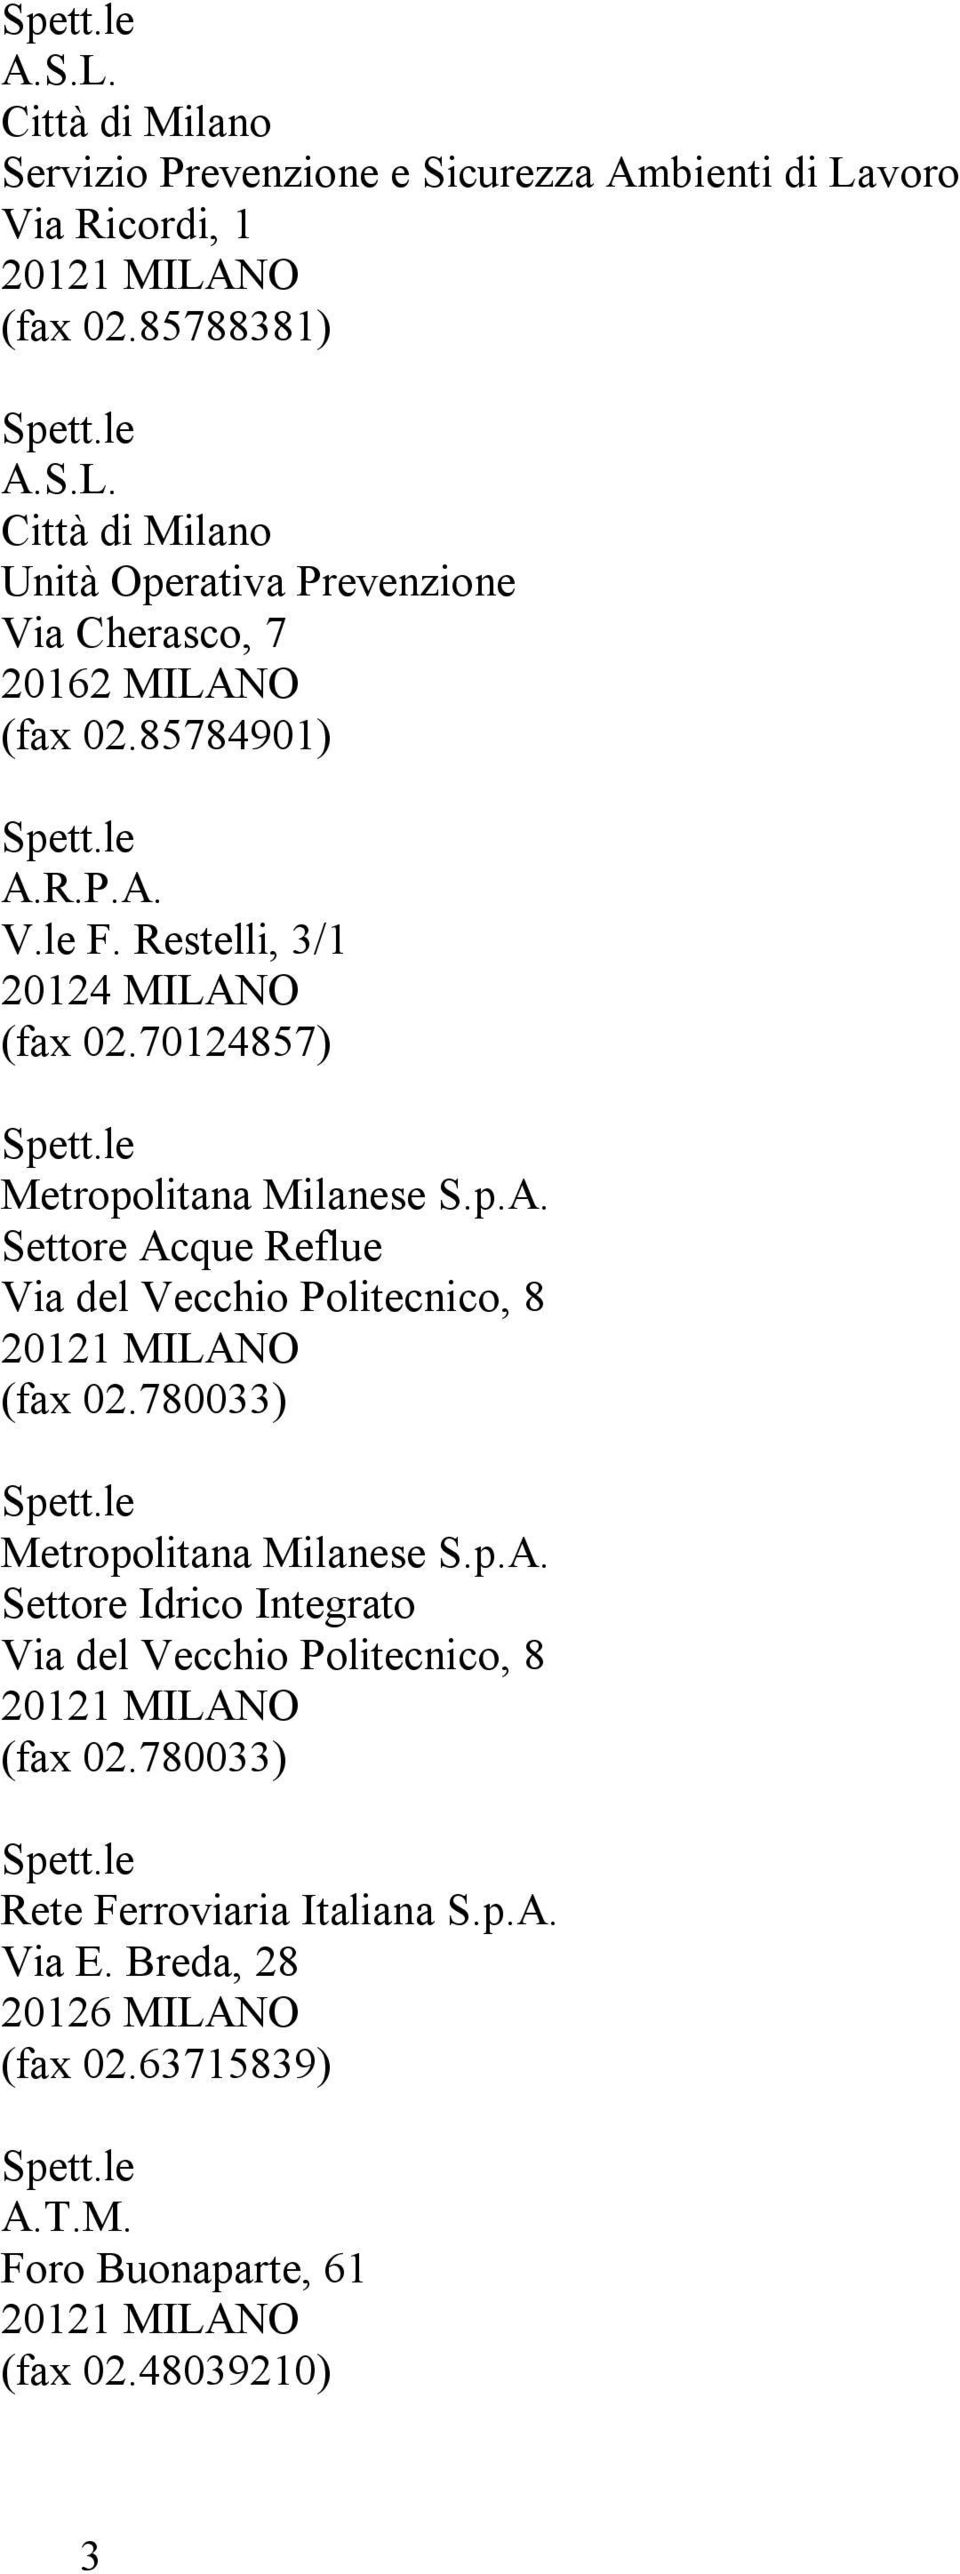 780033) Metropolitana Milanese S.p.A. Settore Idrico Integrato Via del Vecchio Politecnico, 8 (fax 02.780033) Rete Ferroviaria Italiana S.p.A. Via E.